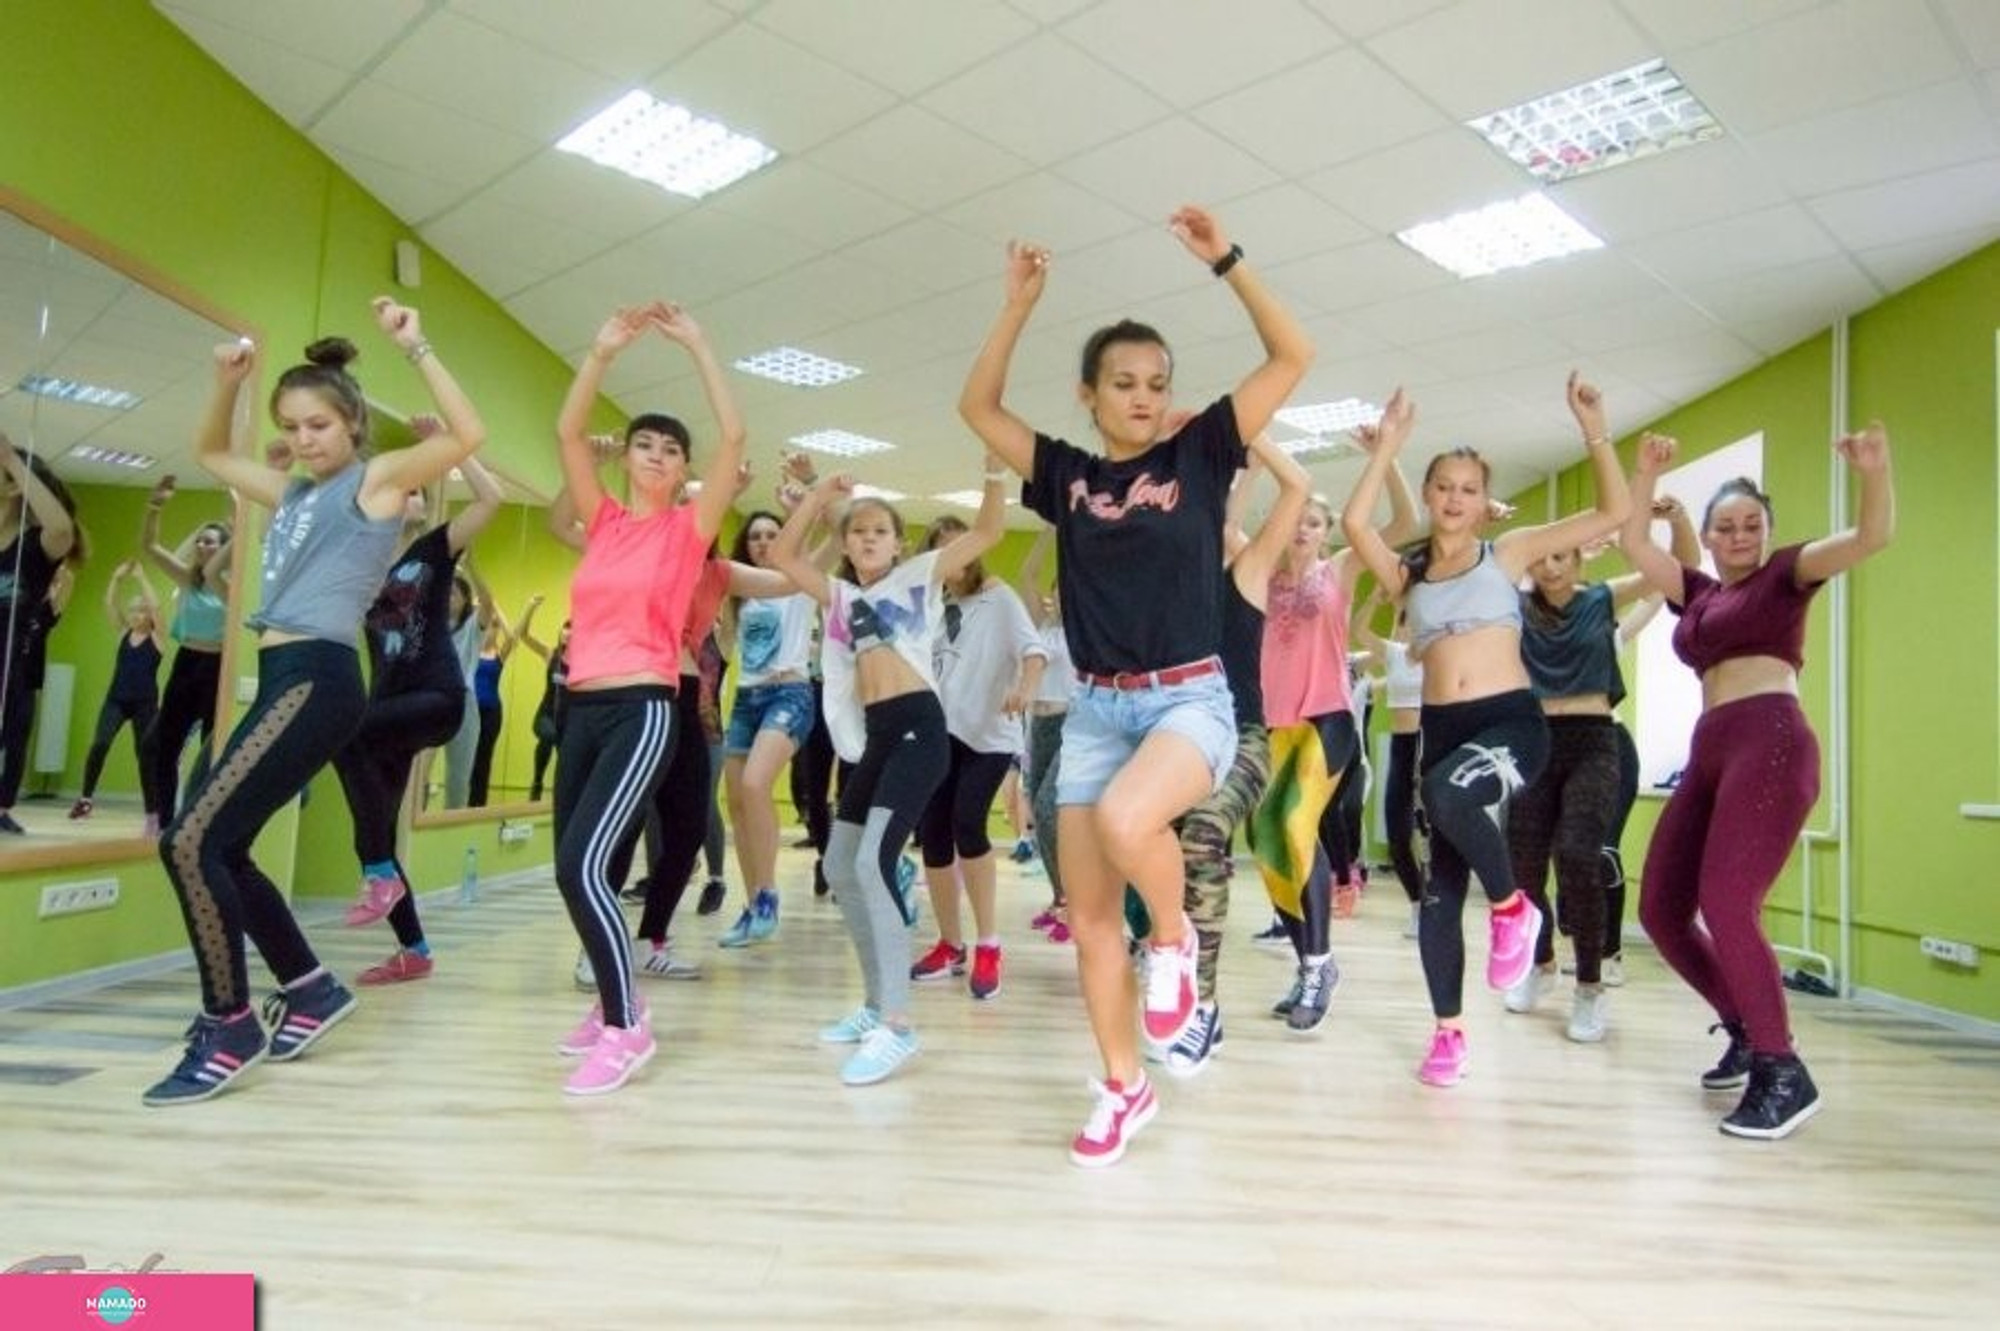 "Дом танца Freedom", "Фридом", занятия танцами для детей от 4 лет и взрослых на Щербанева, Омск 